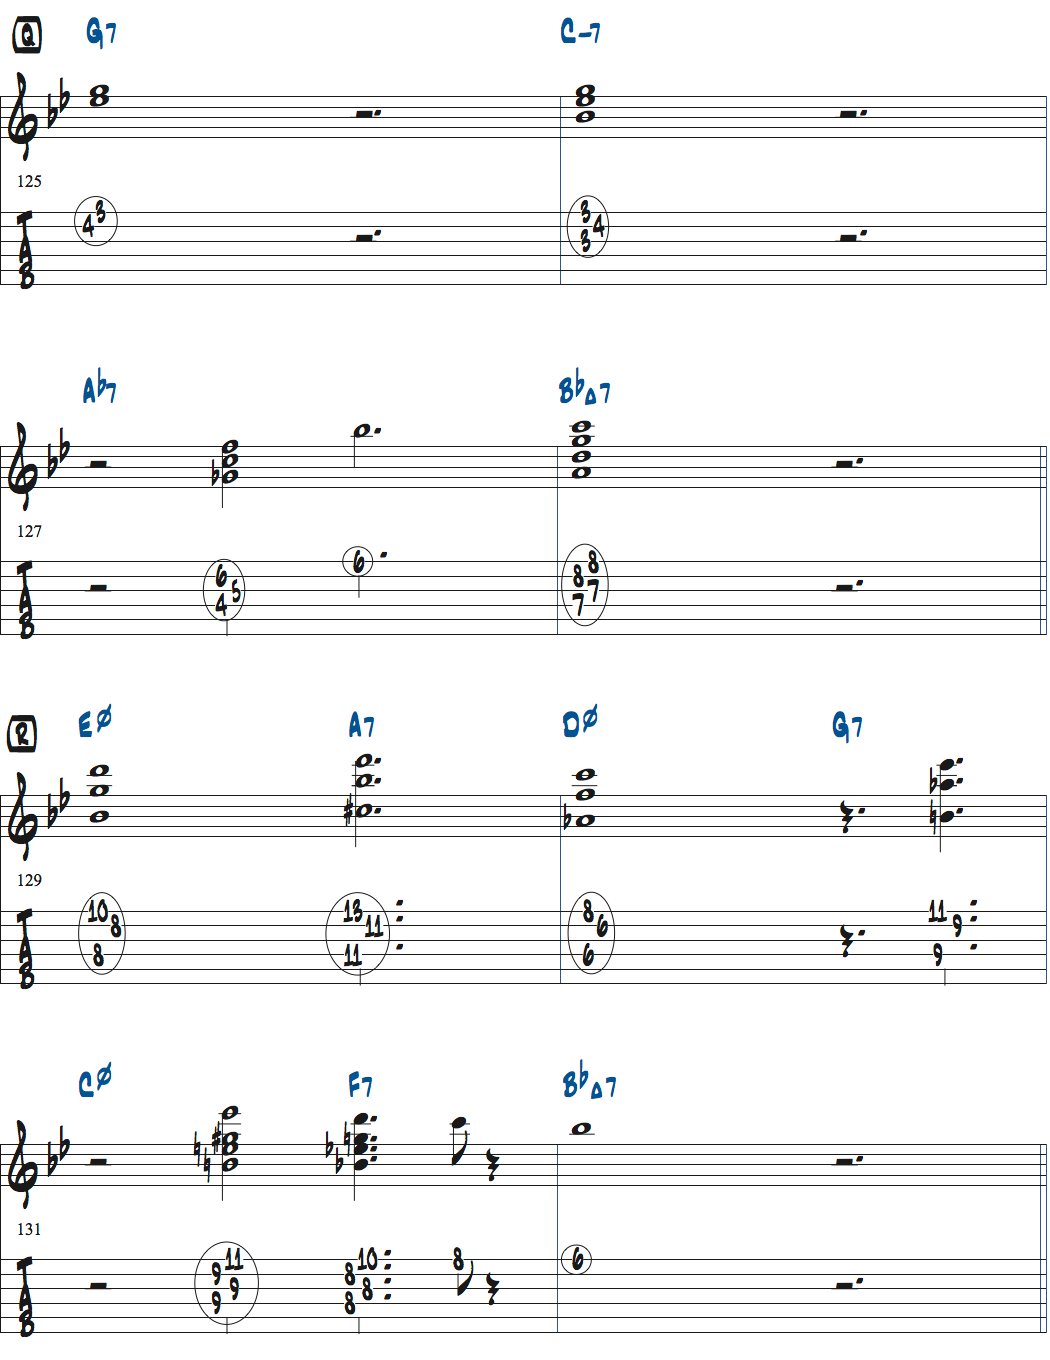 ジョナサン・クライスバーグの星影のステラベースソロのコンピング楽譜ページ2